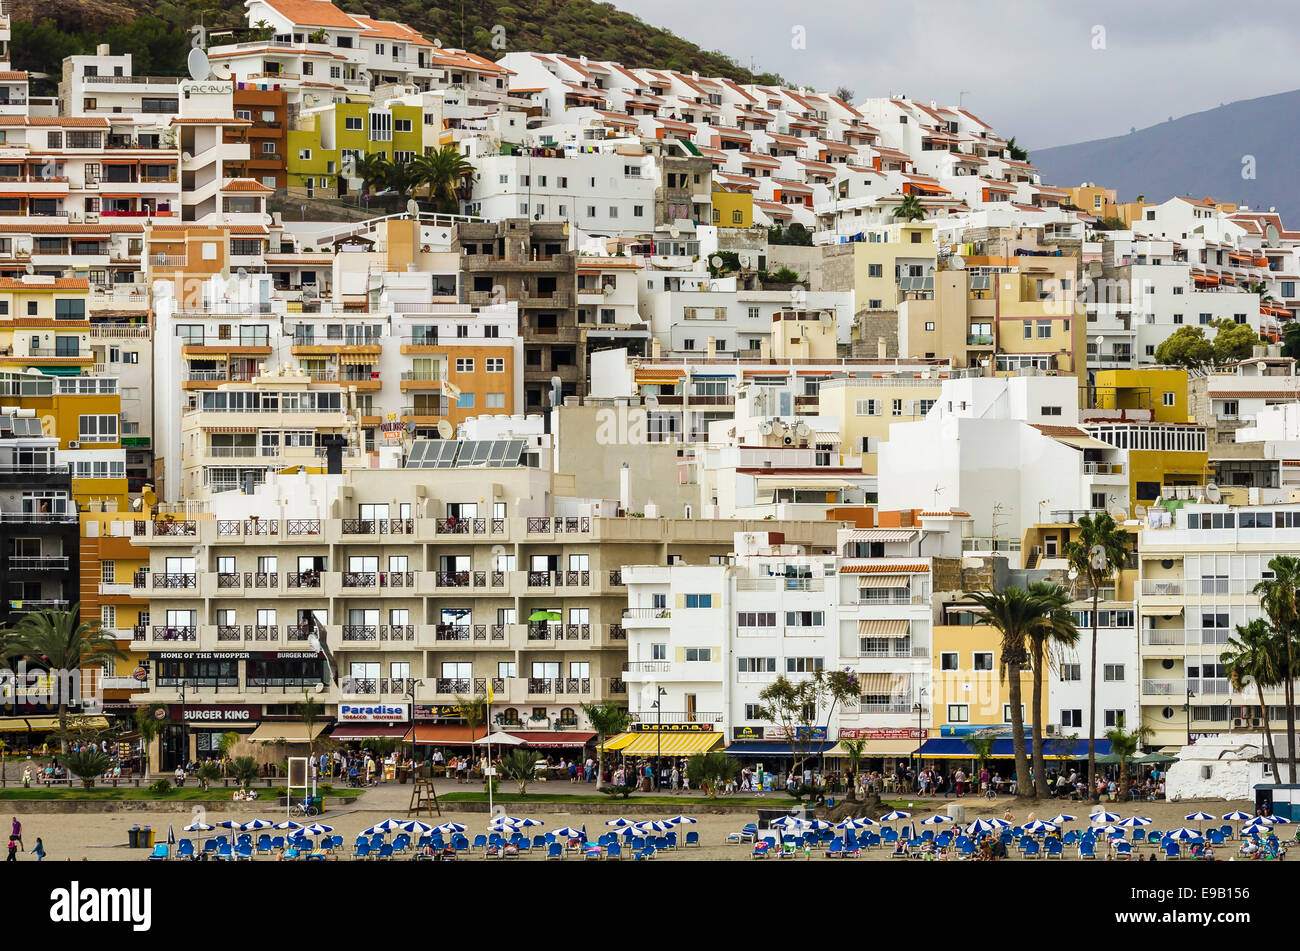 Alberghi e appartamenti in corrispondenza di un tratto di spiaggia, Arona, Tenerife, Isole Canarie, Spagna Foto Stock